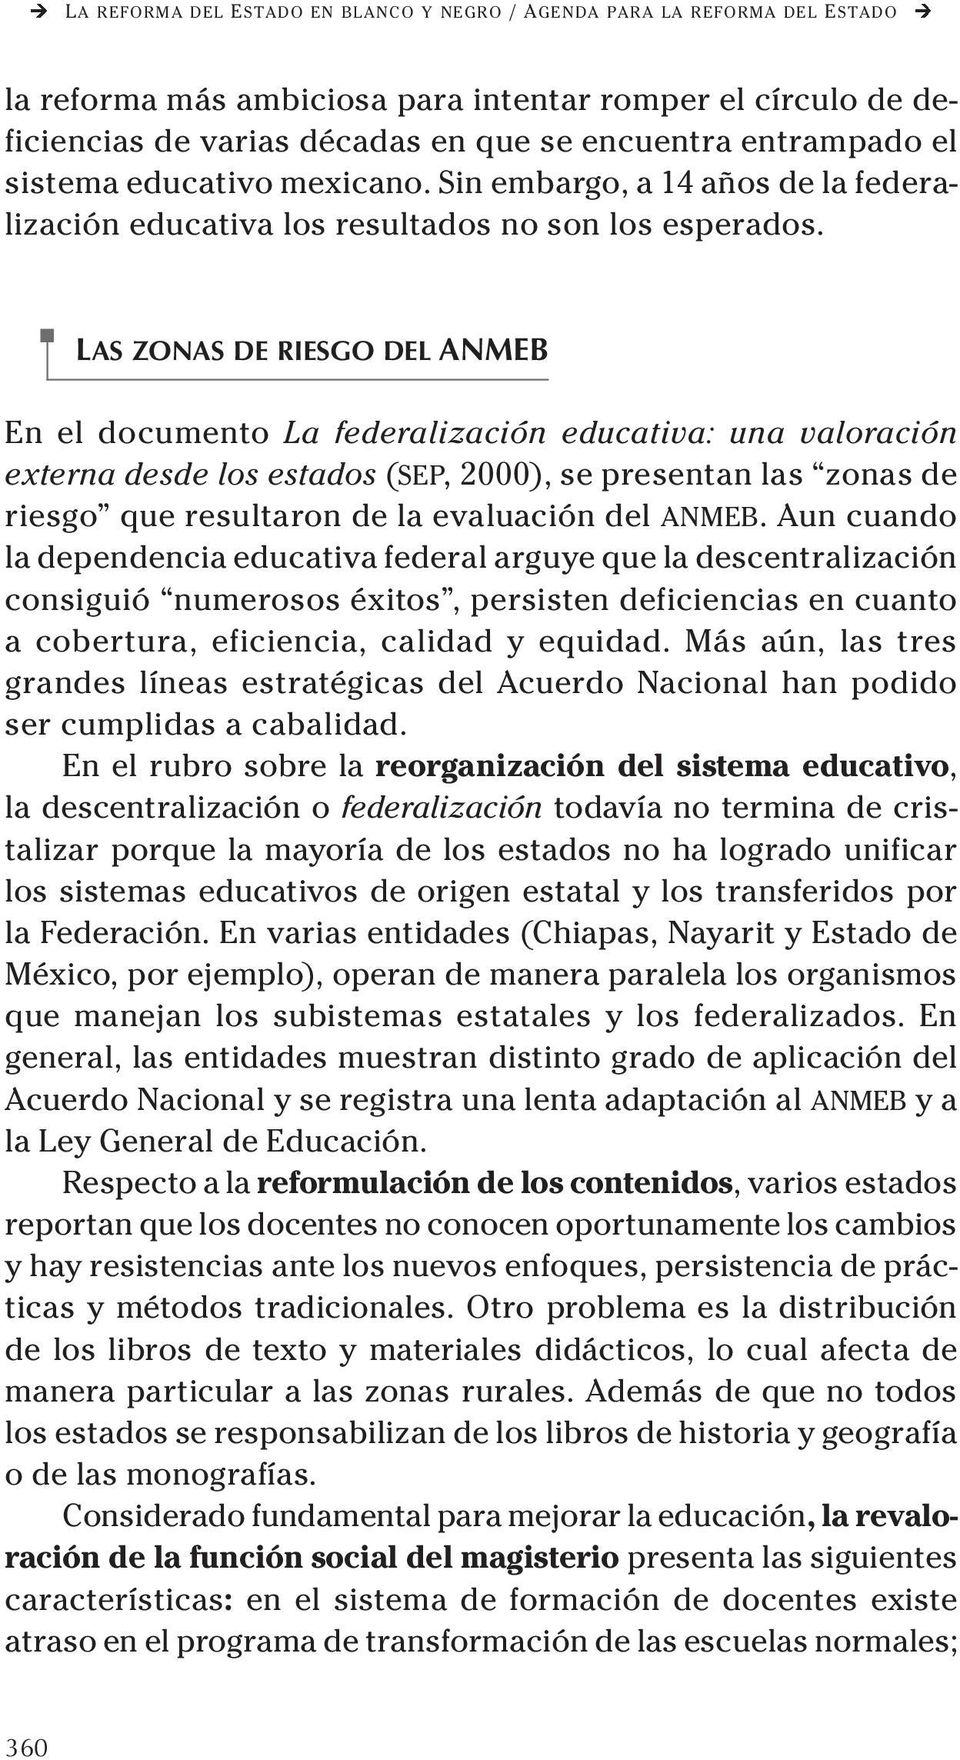 LAS ZONAS DE RIESGO DEL ANMEB En el documento La federalización educativa: una valoración externa desde los estados (SEP, 2000), se presentan las zonas de riesgo que resultaron de la evaluación del